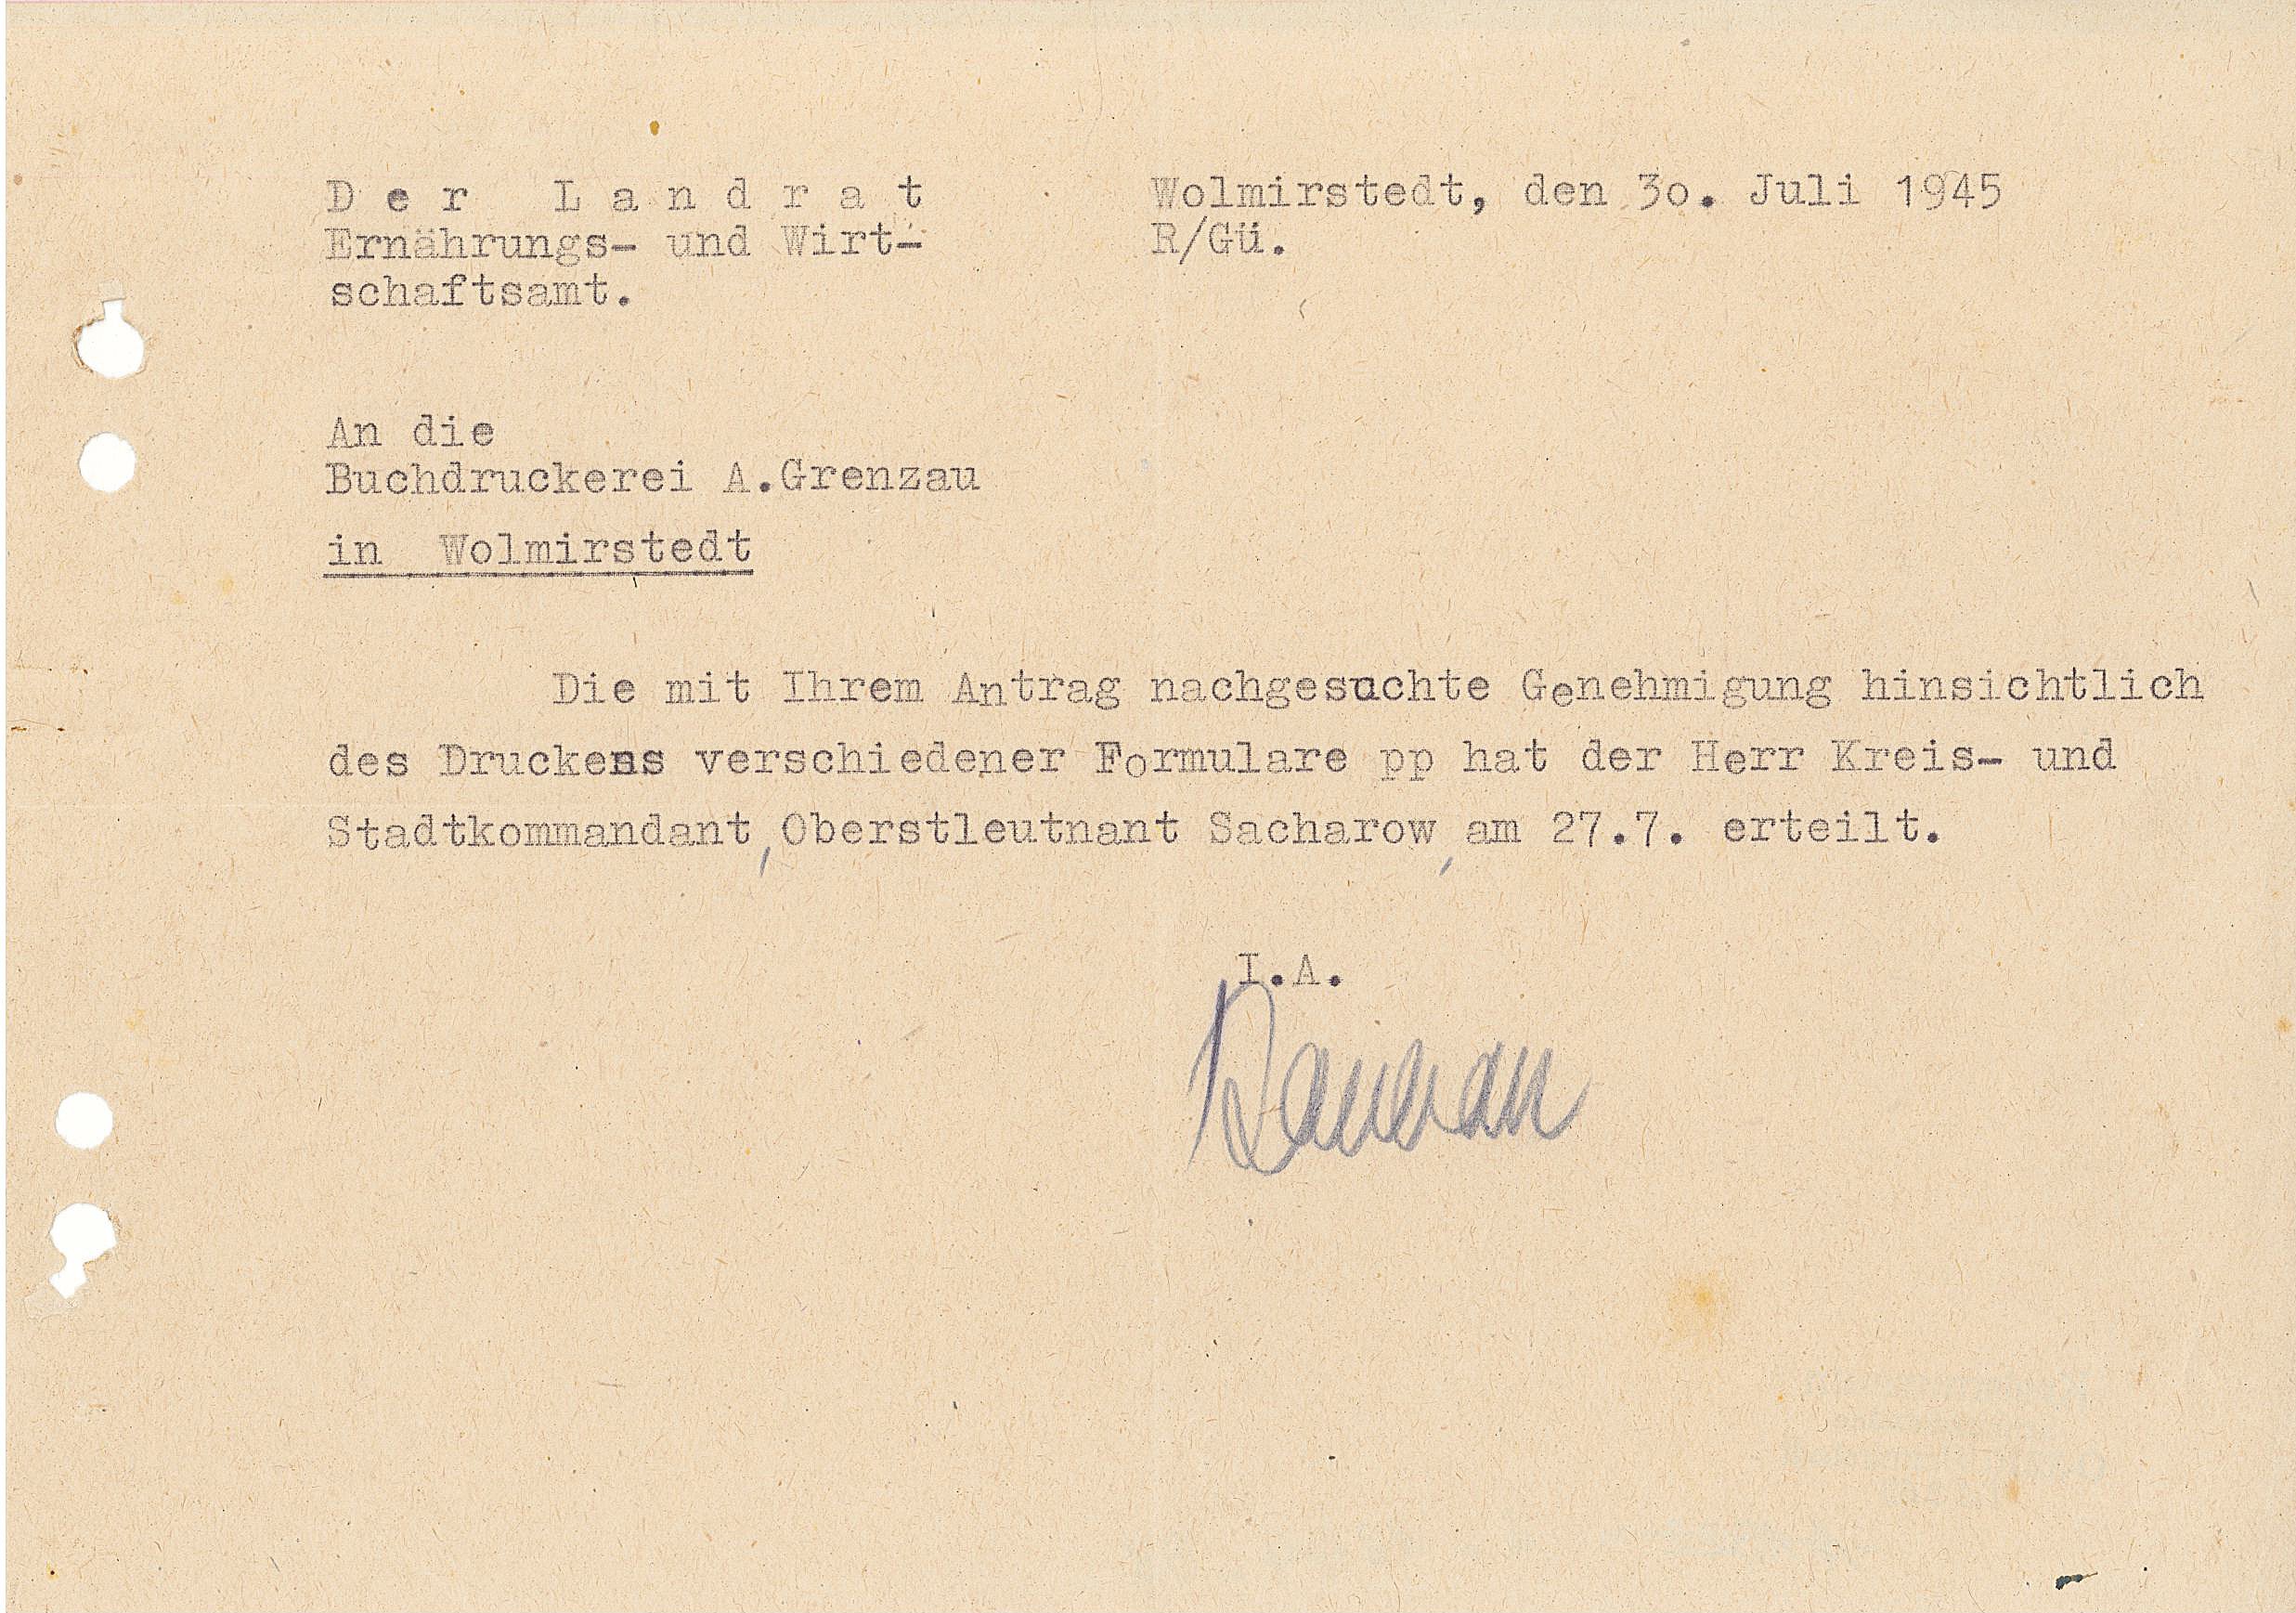 Genehmigung des Druckens verschiedener Formulare - 30.07.1945 (Museum Wolmirstedt RR-F)